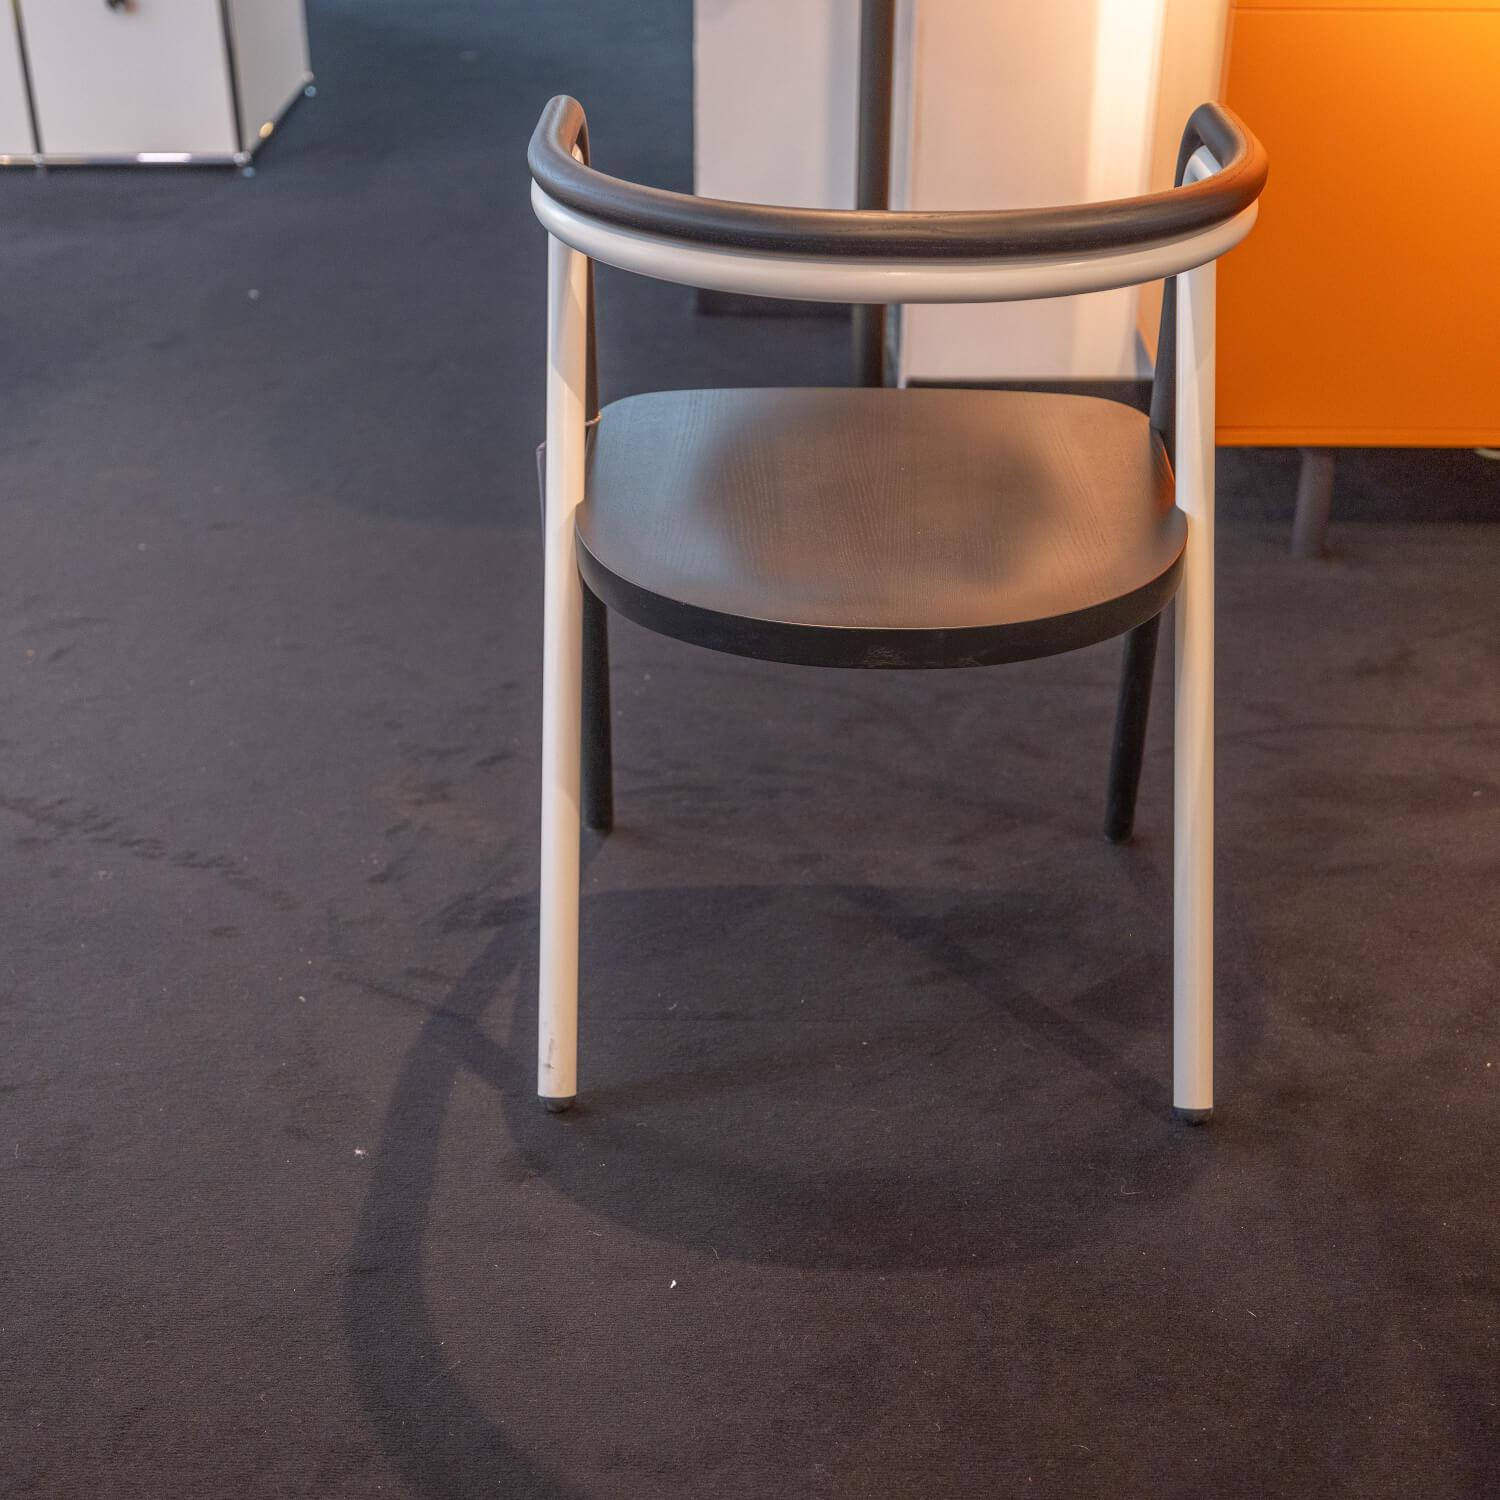 Stuhl Chair 2 Sitzfläche Multischicht Birkenholz Mit Massiv Esche Gestell Esche Massiv Schwarz Lackiert Und Metallrohr Schwarz Lackiert